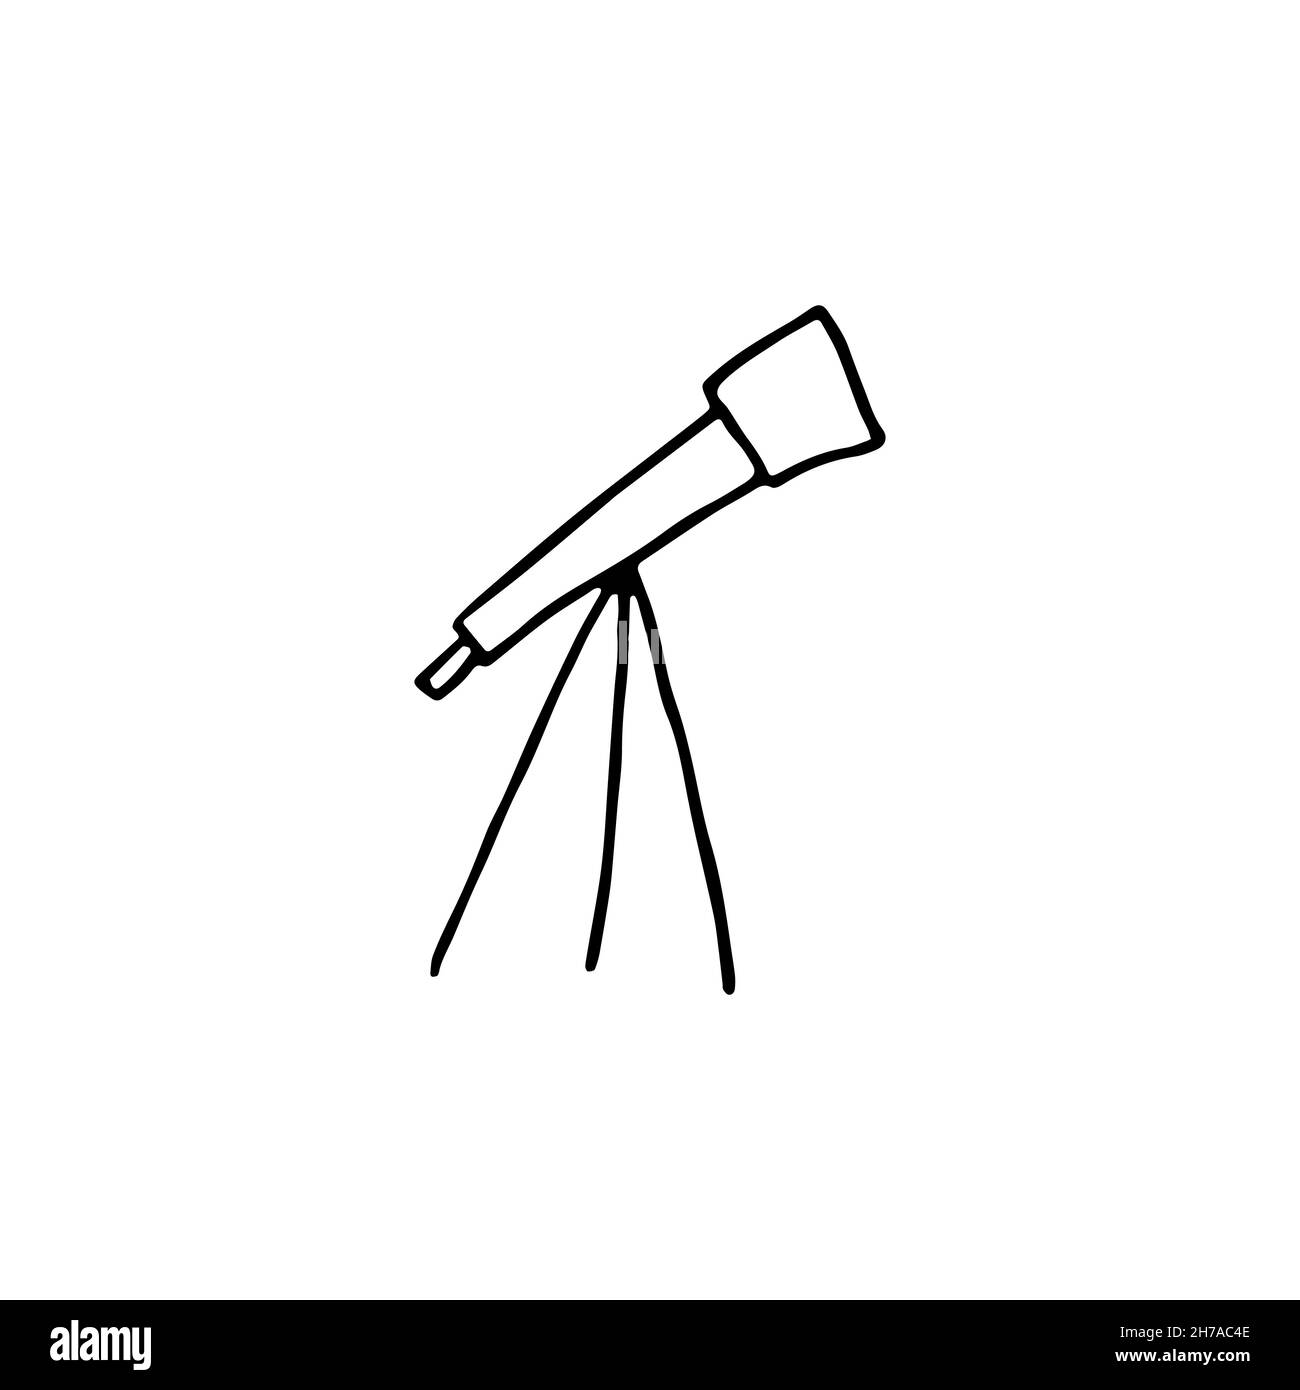 L'image du télescope Doodle.Contour de l'étendue isolé sur fond blanc.Dispositif optique pour l'exploration spatiale.Instrument Astoronamic, découverte scientifique Illustration de Vecteur